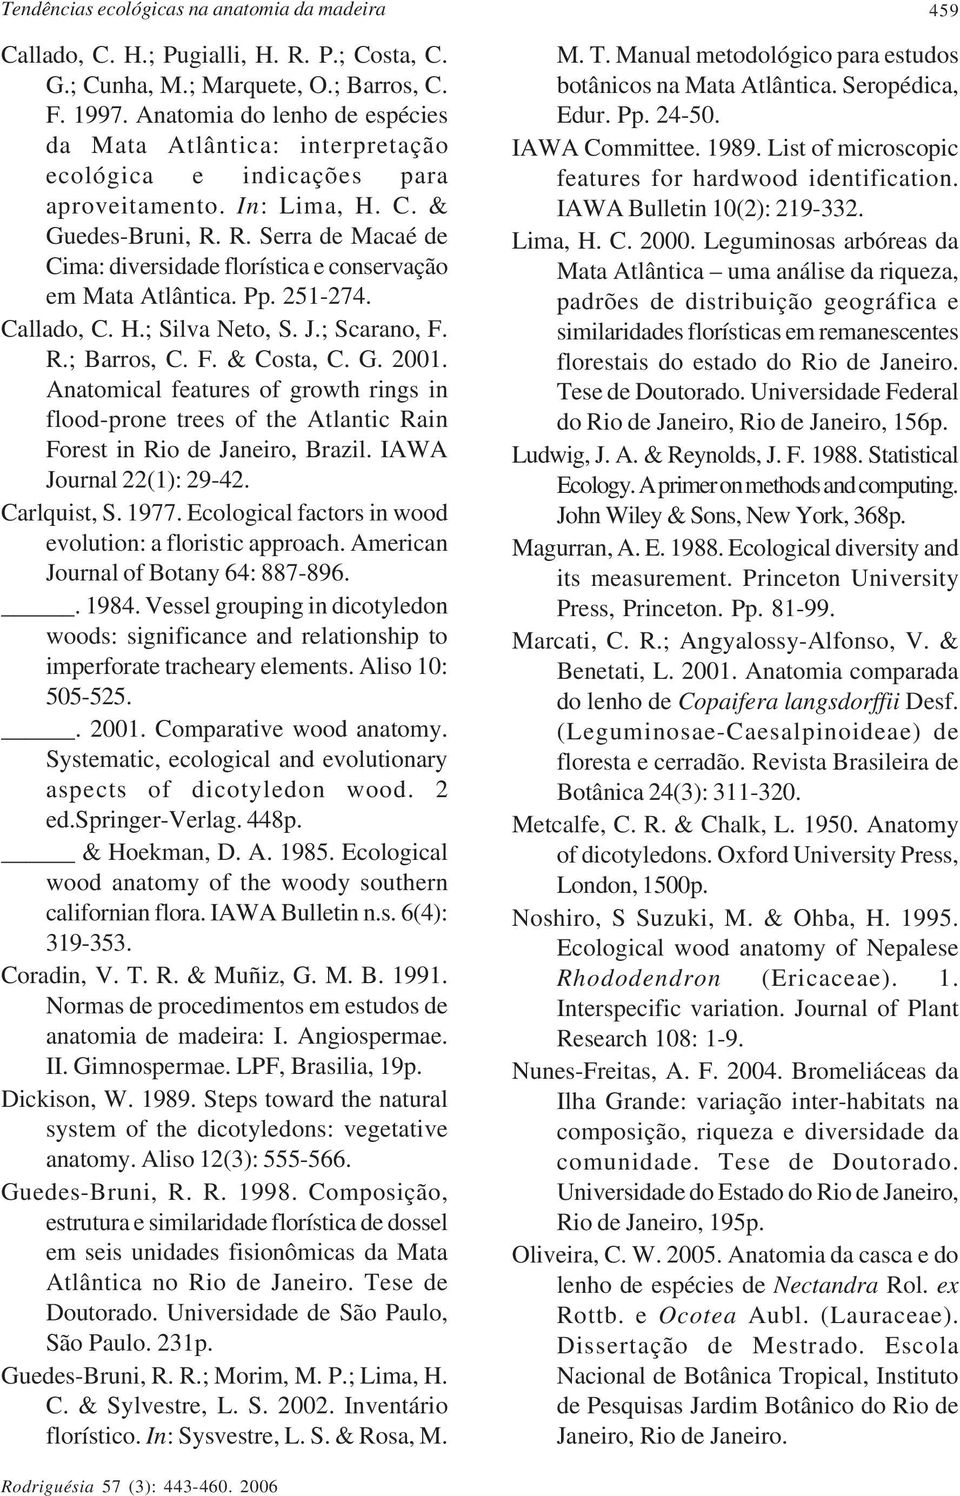 R. Serra de Macaé de Cima: diversidade florística e conservação em Mata Atlântica. Pp. 251-274. Callado, C. H.; Silva Neto, S. J.; Scarano, F. R.; Barros, C. F. & Costa, C. G. 2001.